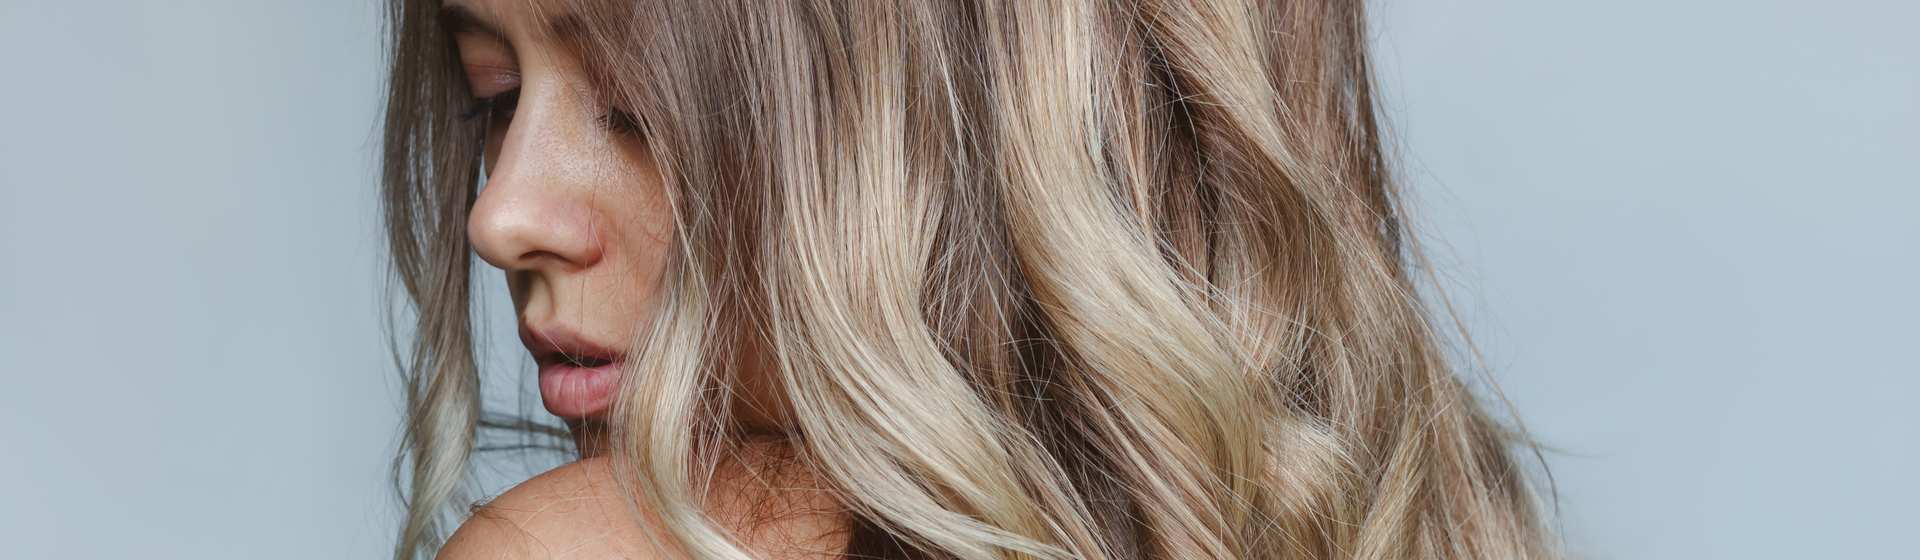 6 Cuidados com o cabelo loiro para mantê-lo saudável